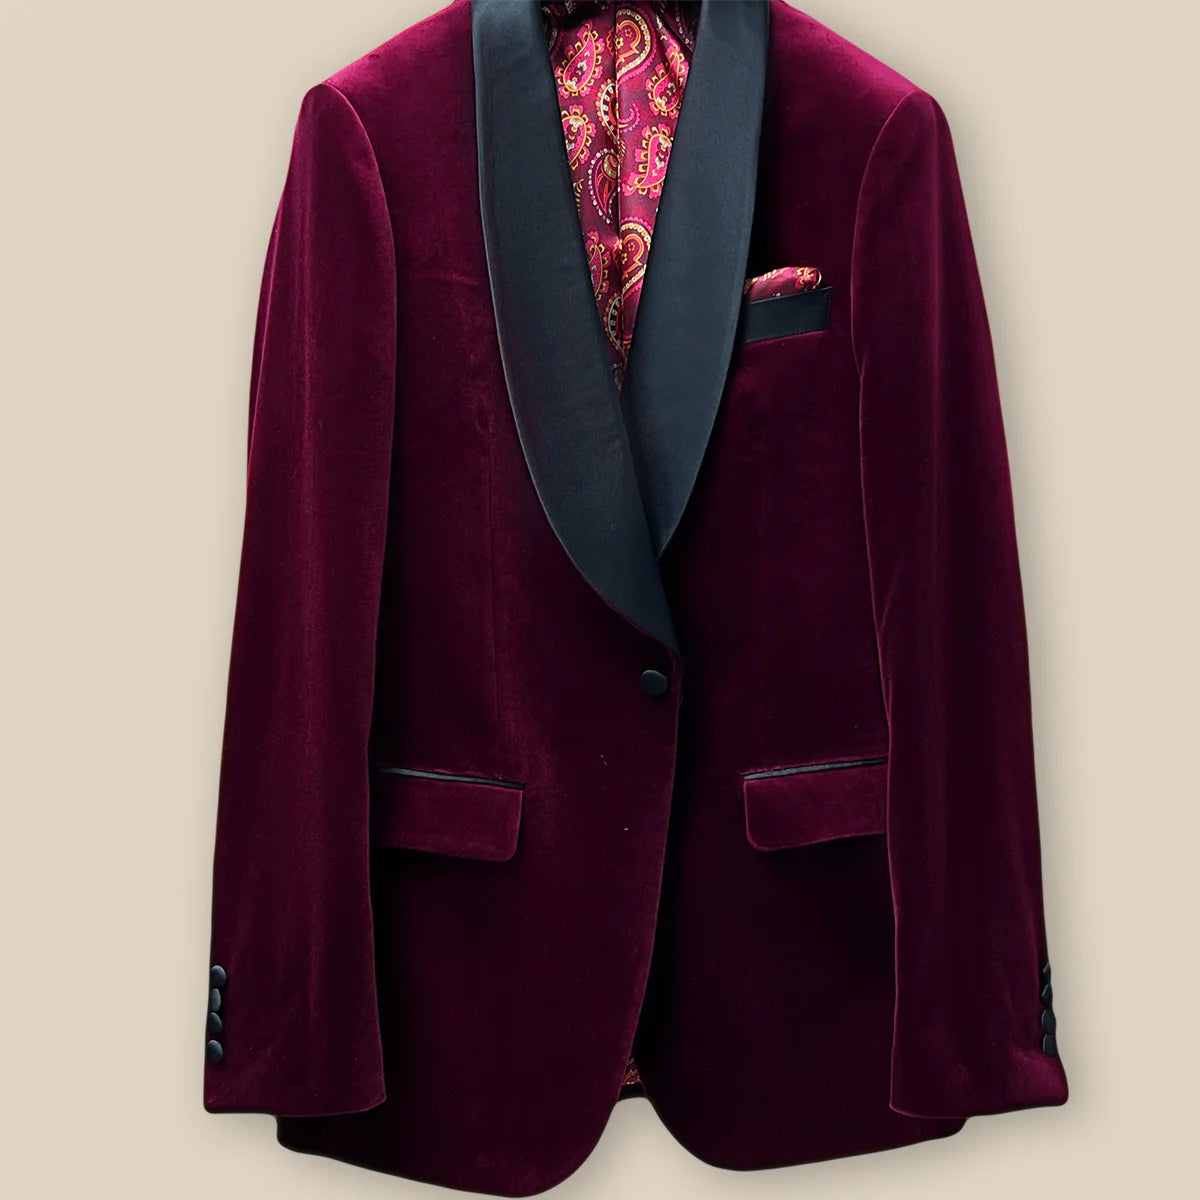 Button panel view on a burgundy velvet formal tuxedo jacket.